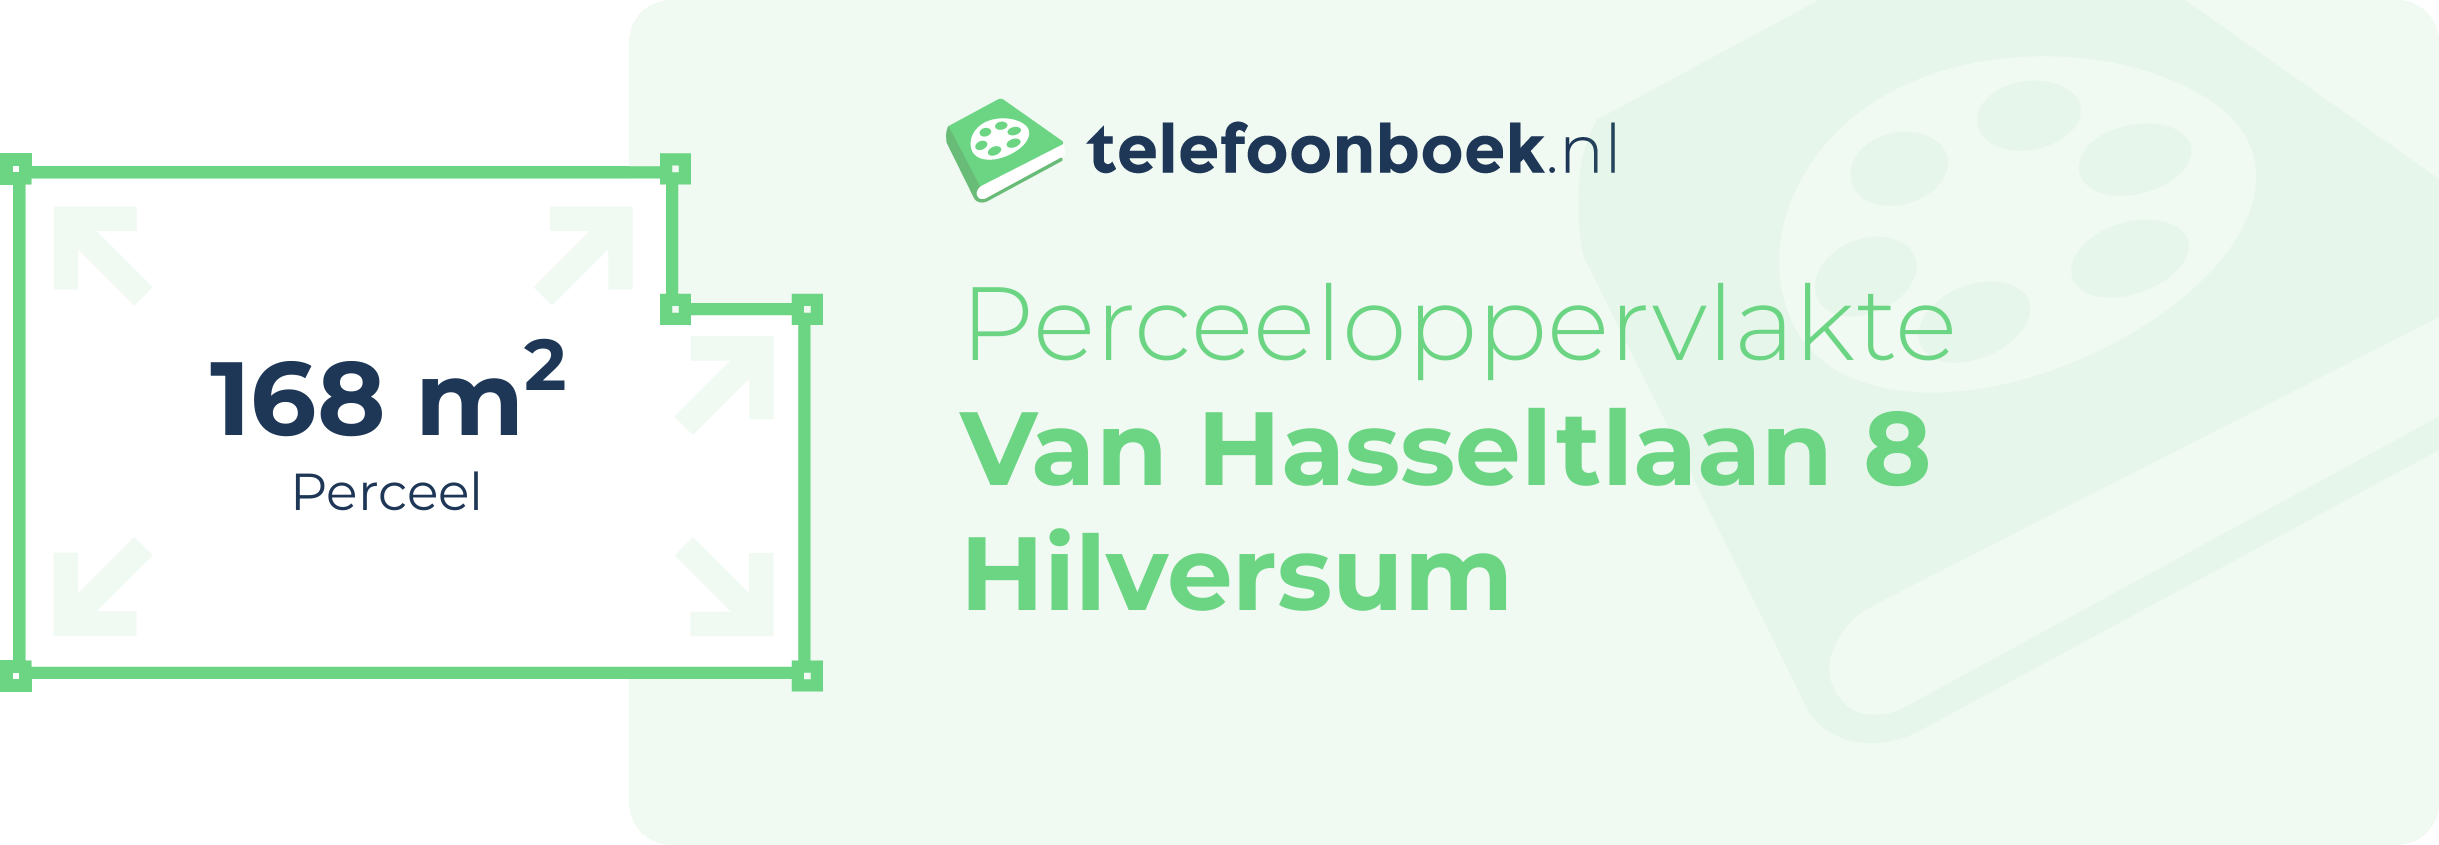 Perceeloppervlakte Van Hasseltlaan 8 Hilversum